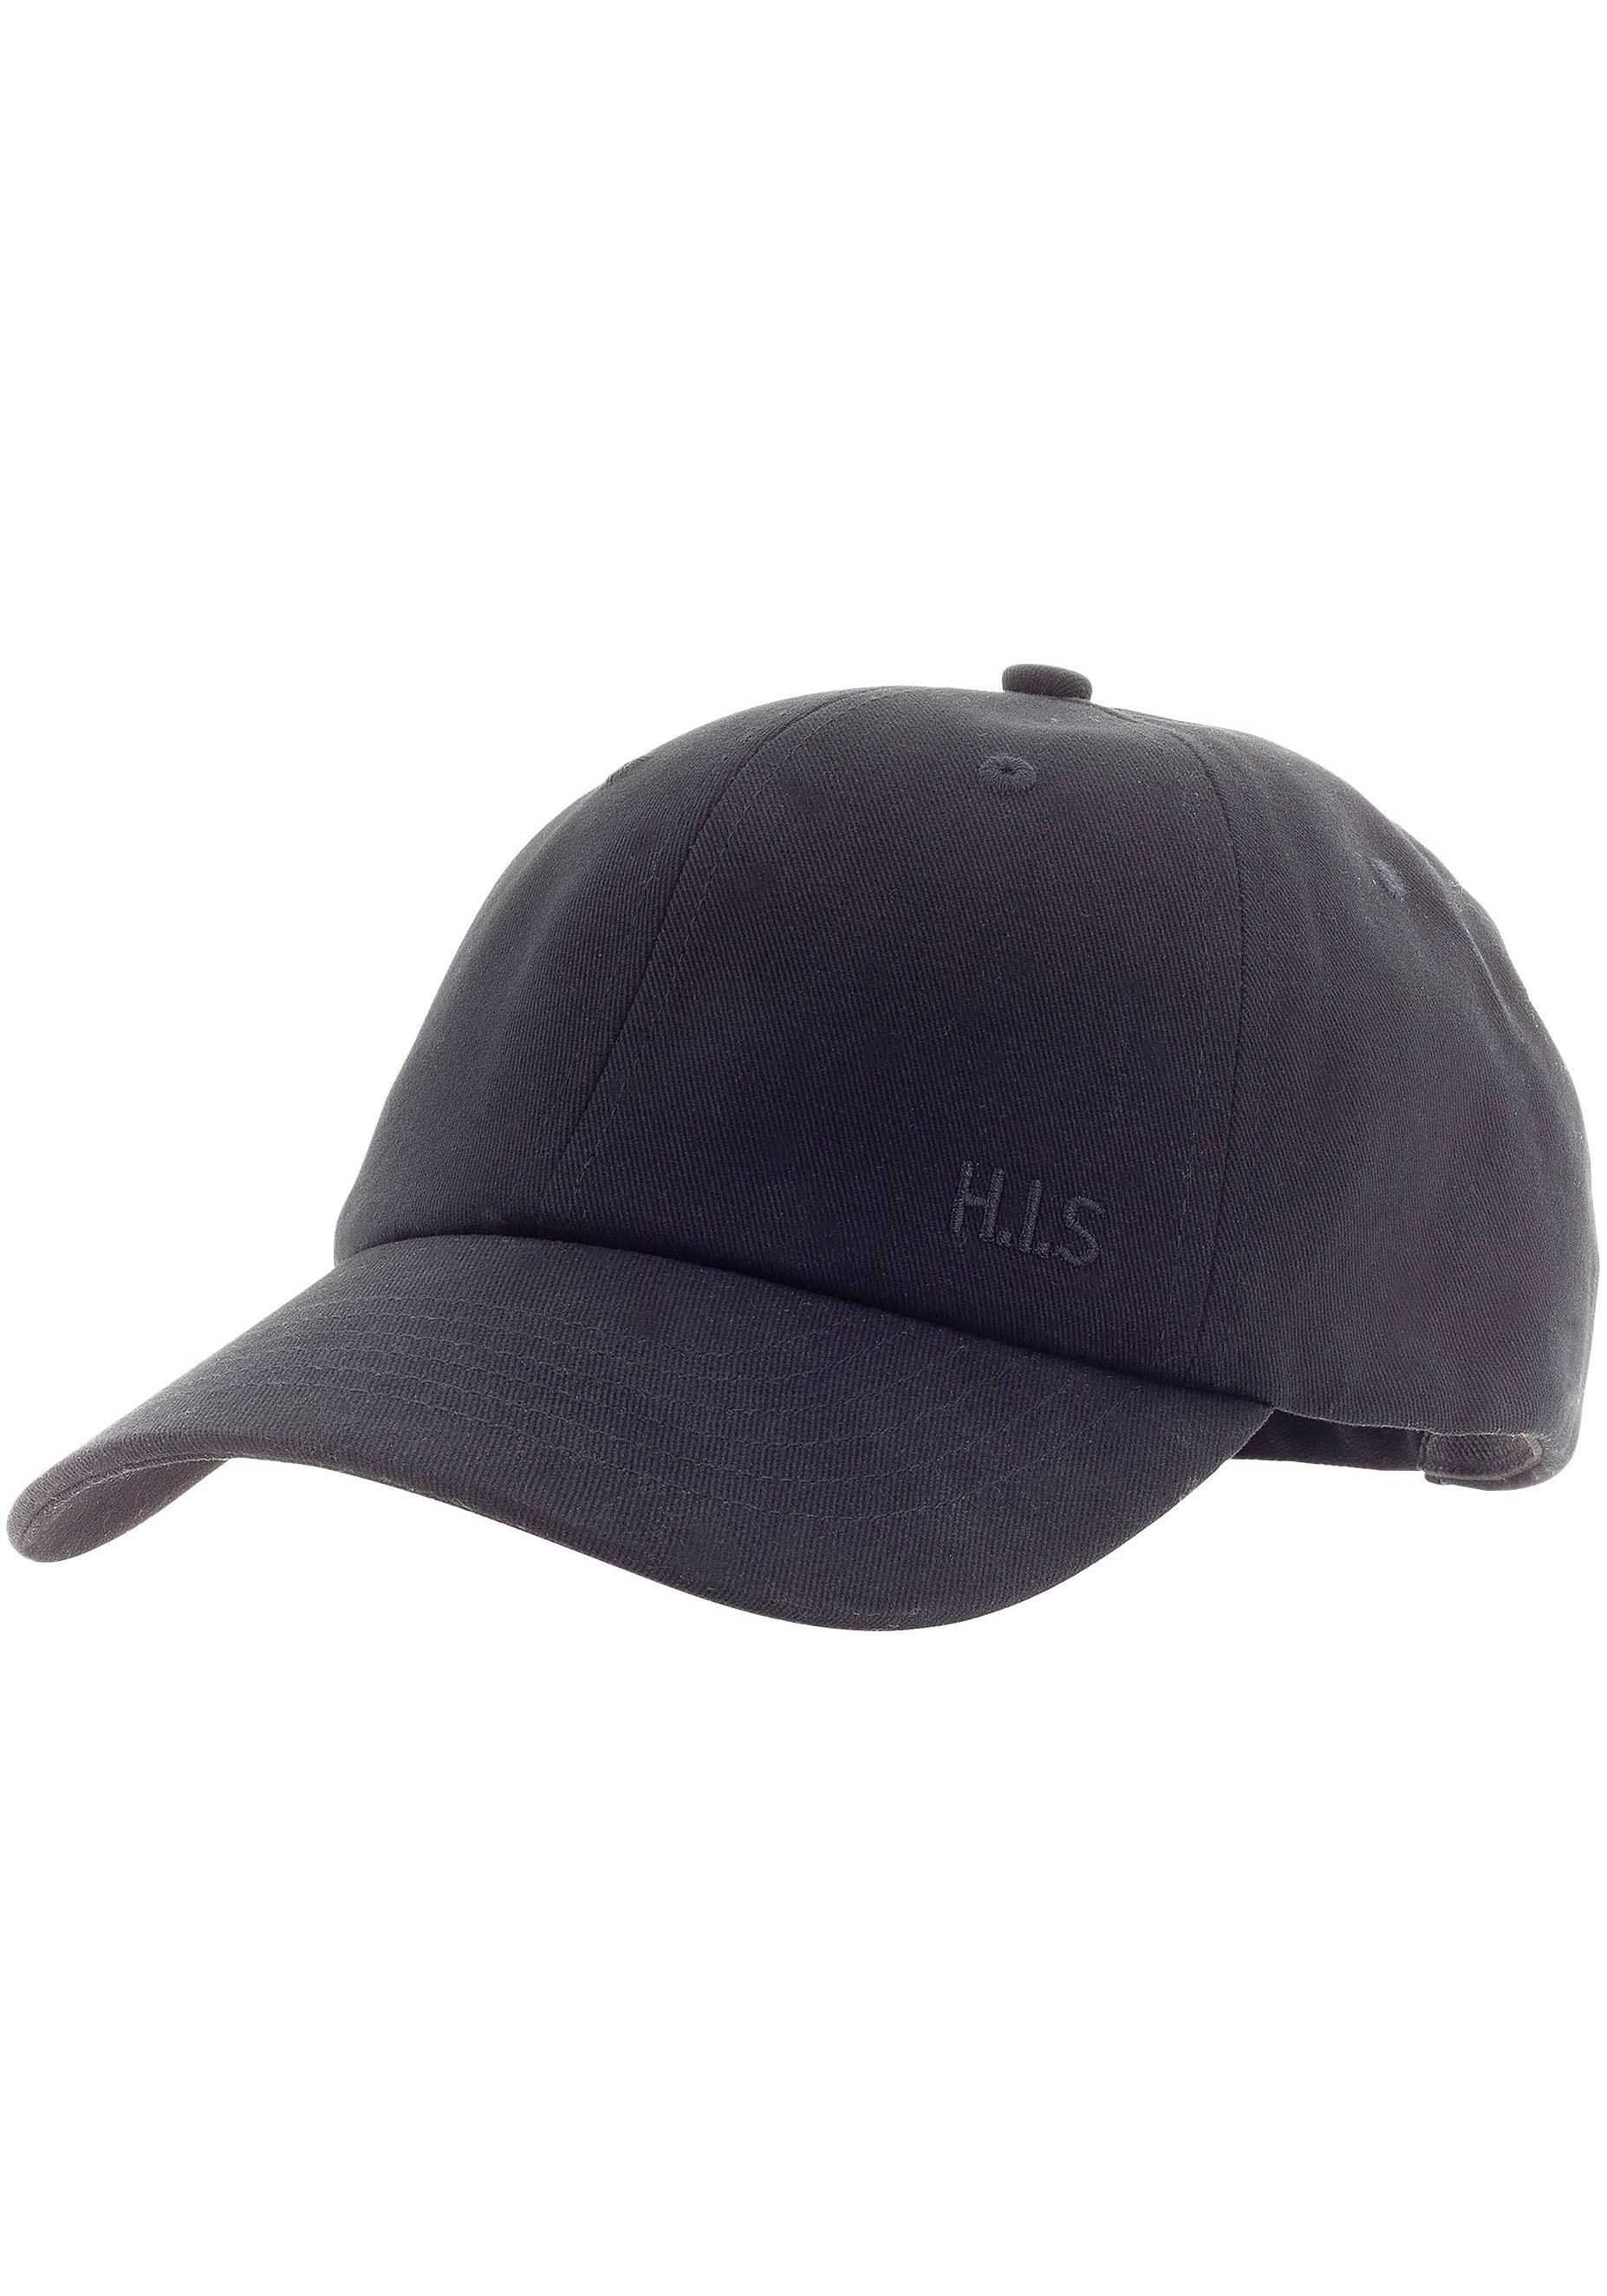 H.I.S Verwaschungen leichten UNIVERSAL Baumwollcap Cap, online Stickerei bei mit und H.I.S. Baseball